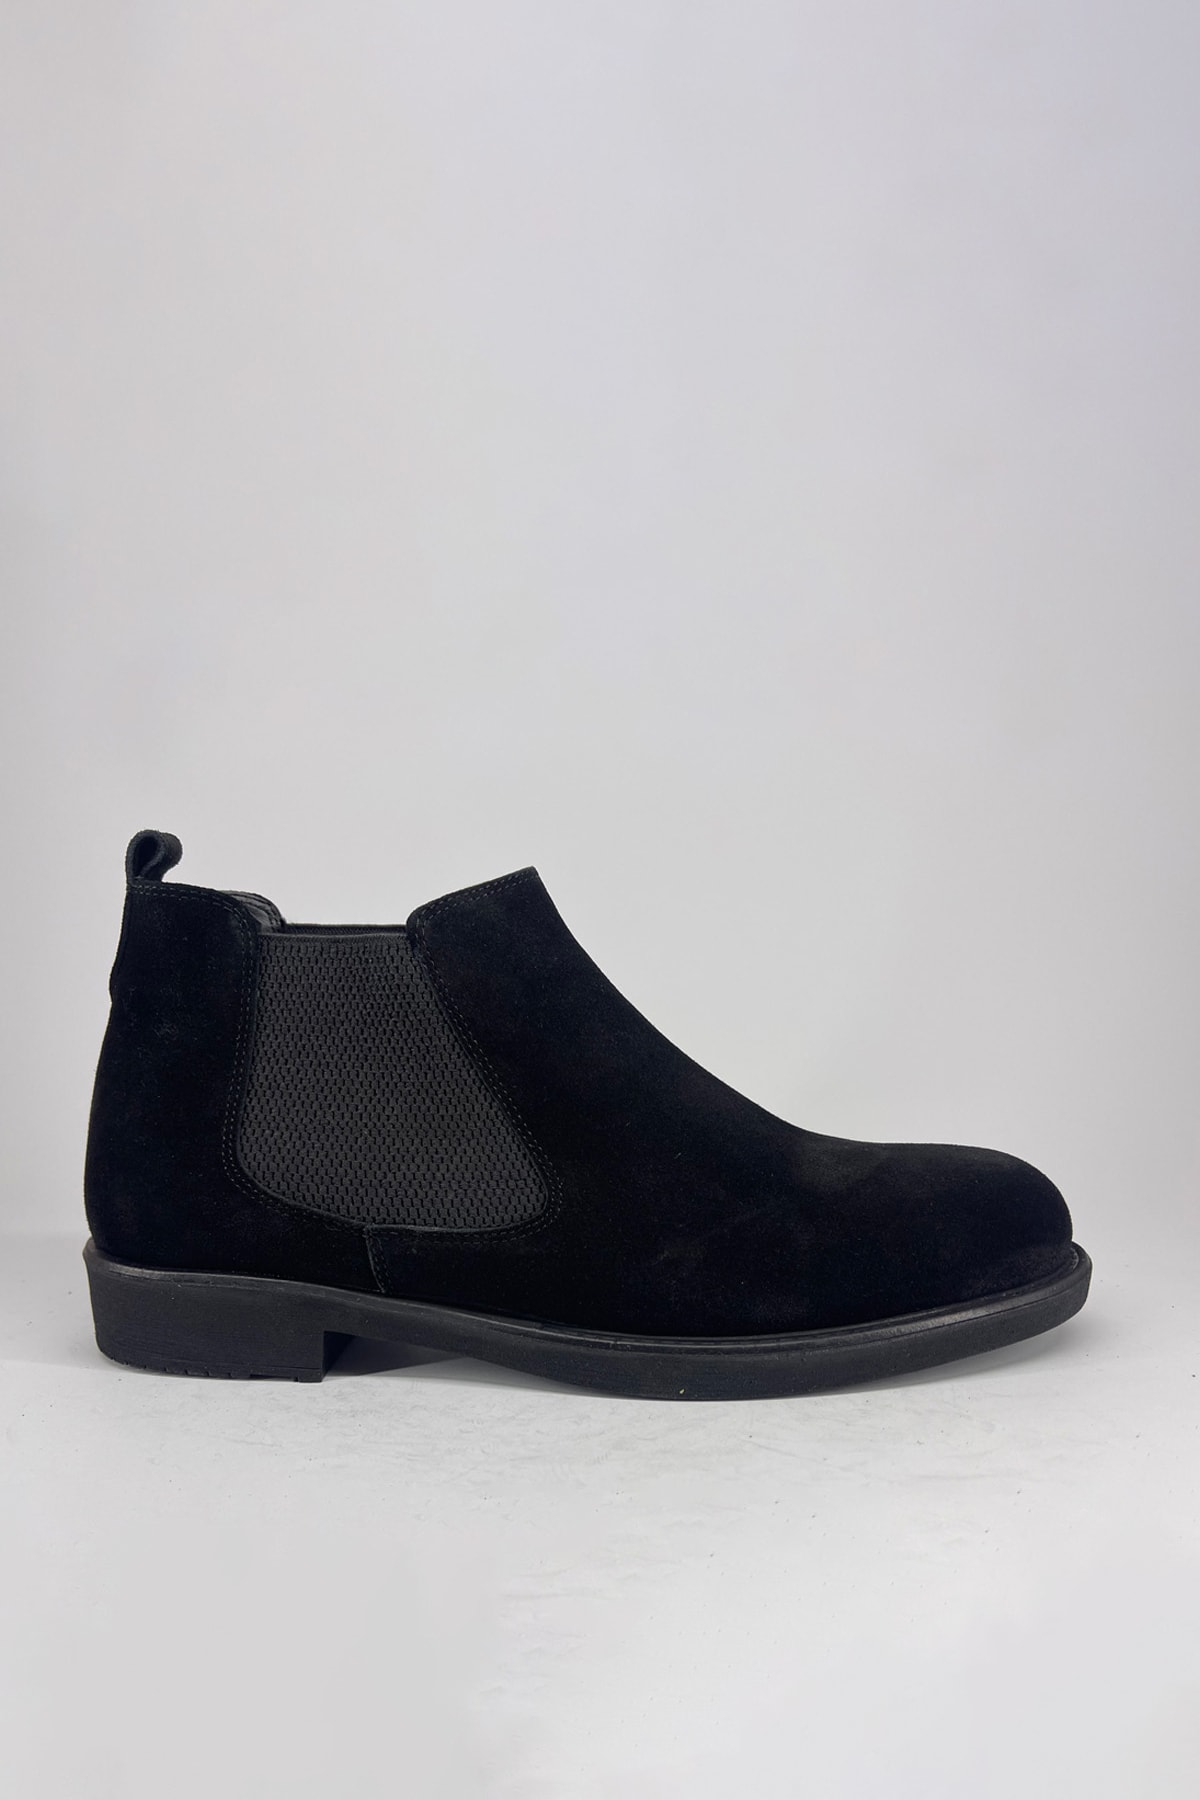 CEMAL SALUR Hakiki Deri Süet Erkek Bot Kışlık Lastikli Bağcıksız Siyah Ayakkabı